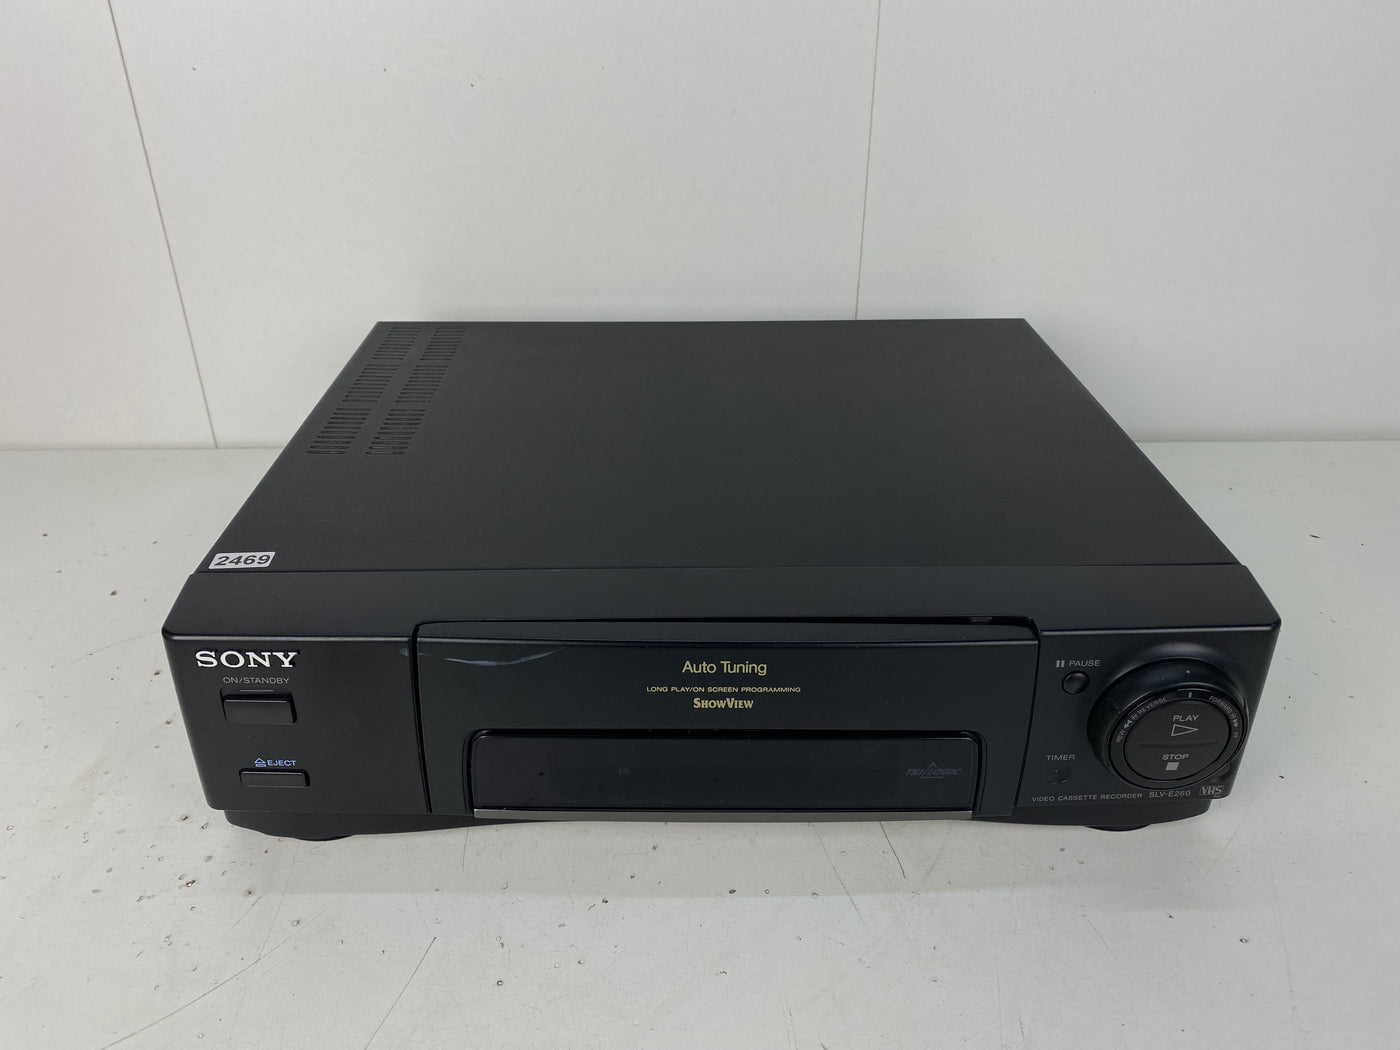 Sony SLV-E260 VHS Video Cassette Recorder